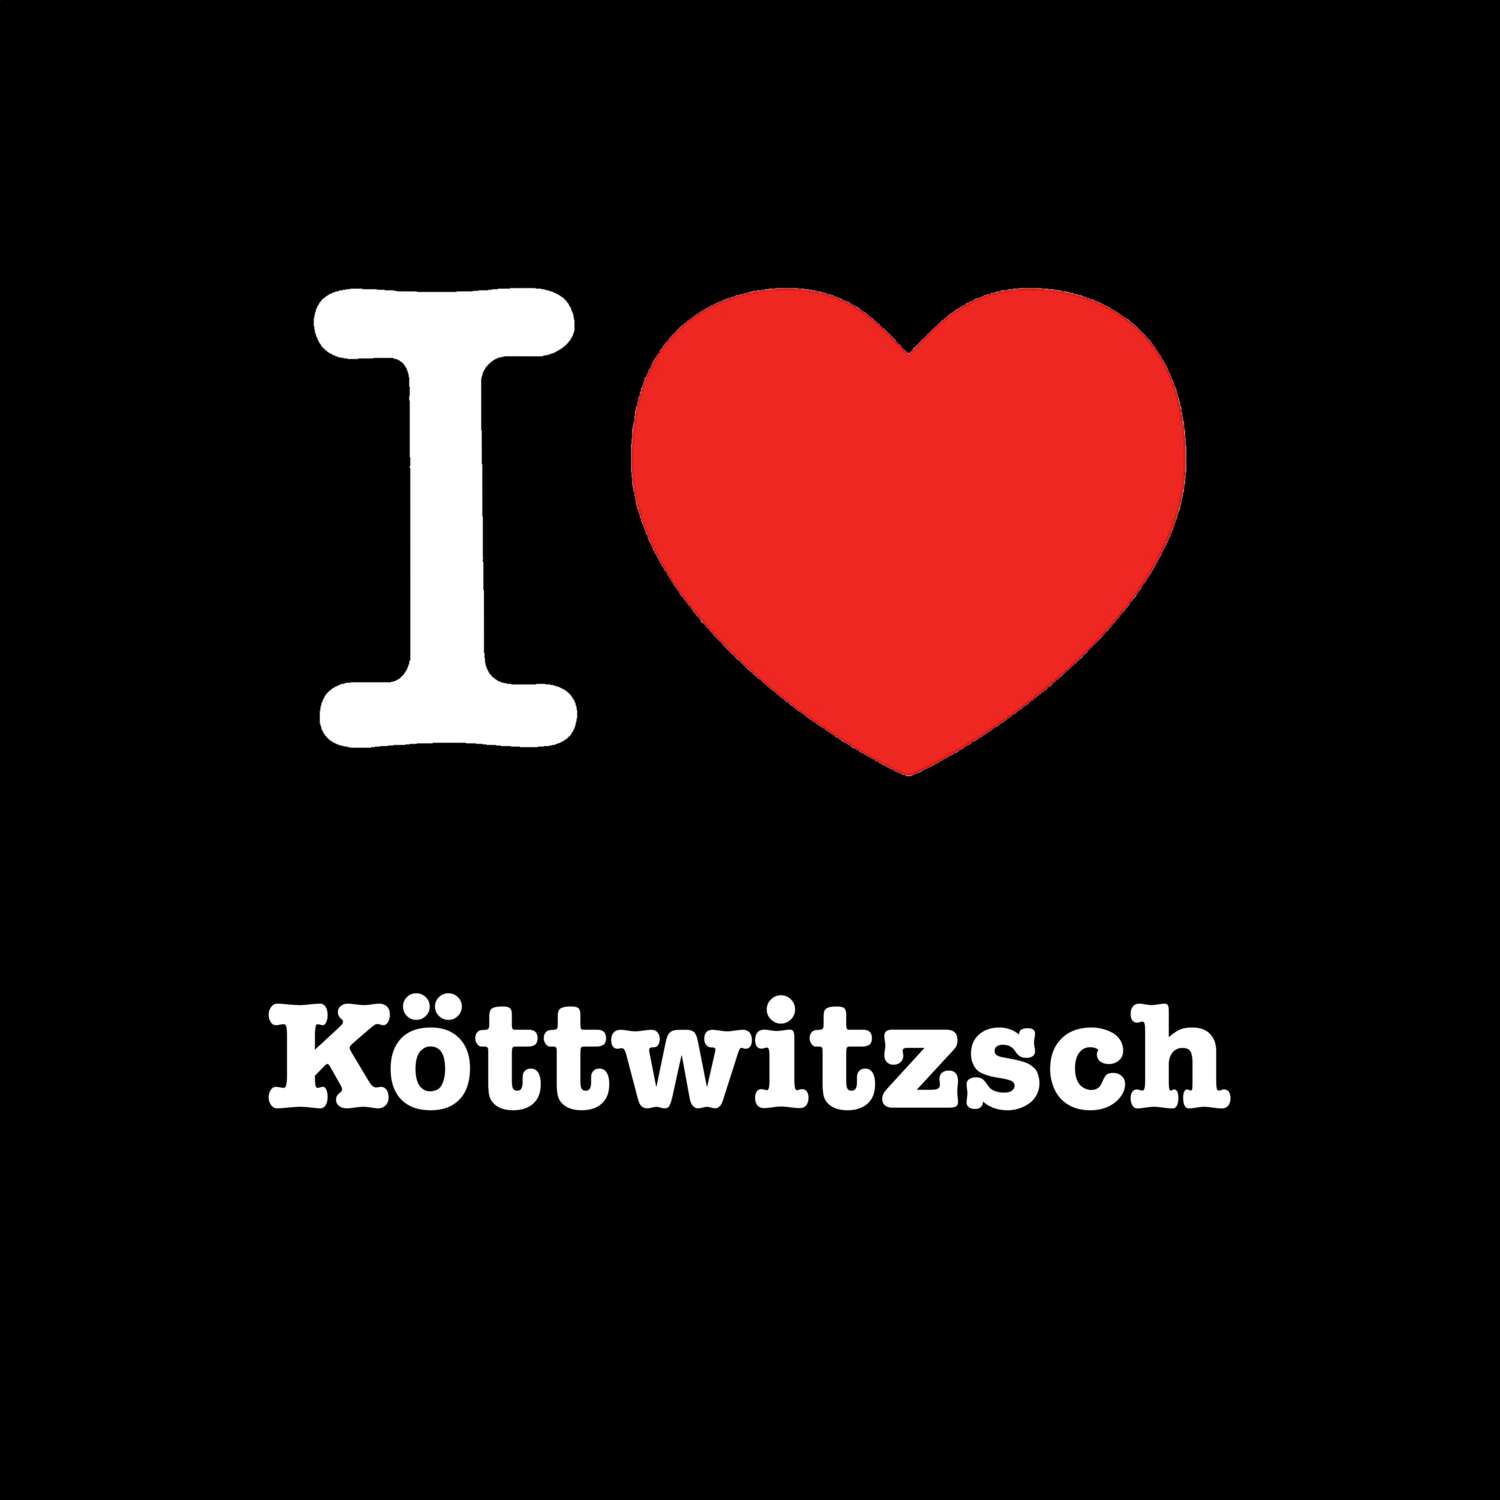 Köttwitzsch T-Shirt »I love«